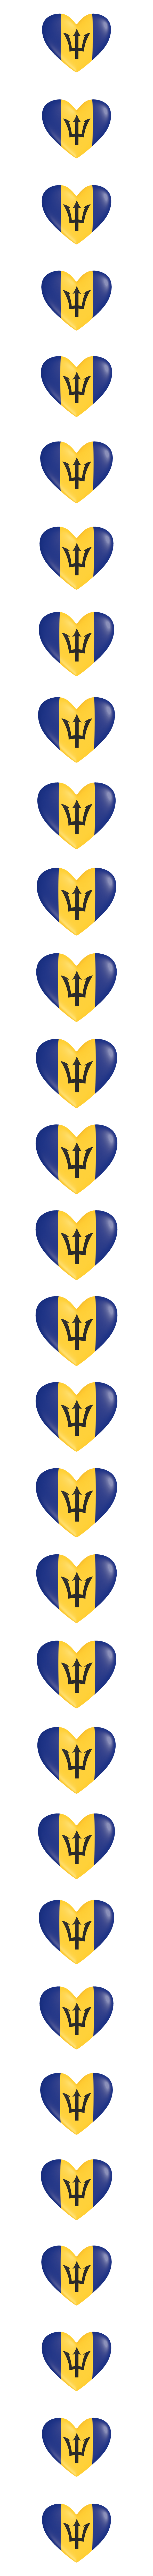 Barbados heart